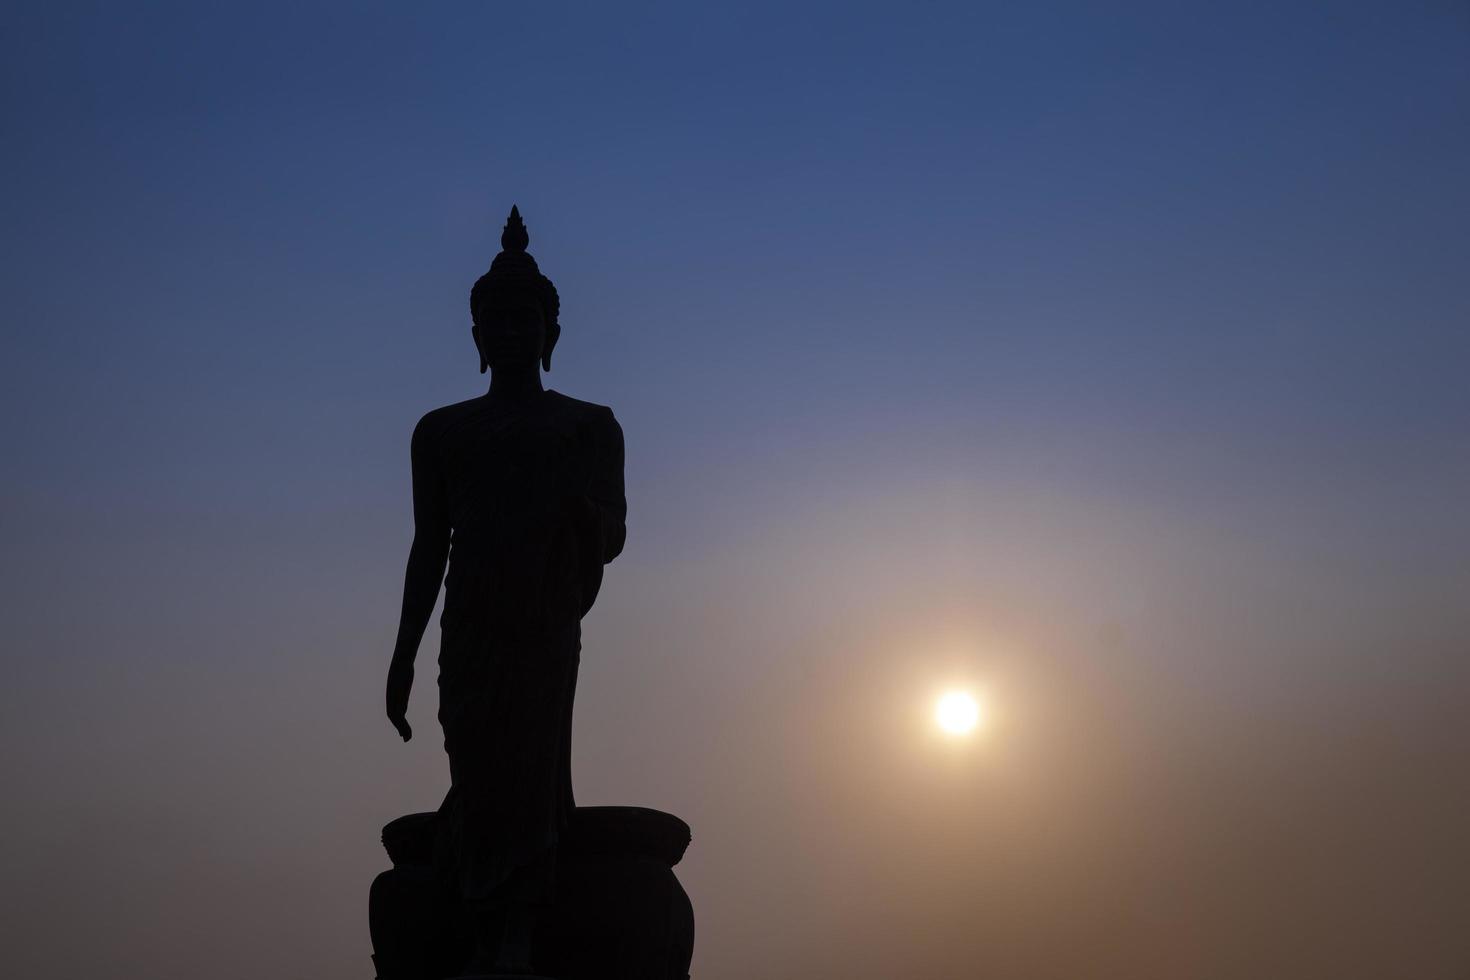 grande Buda ao pôr do sol foto